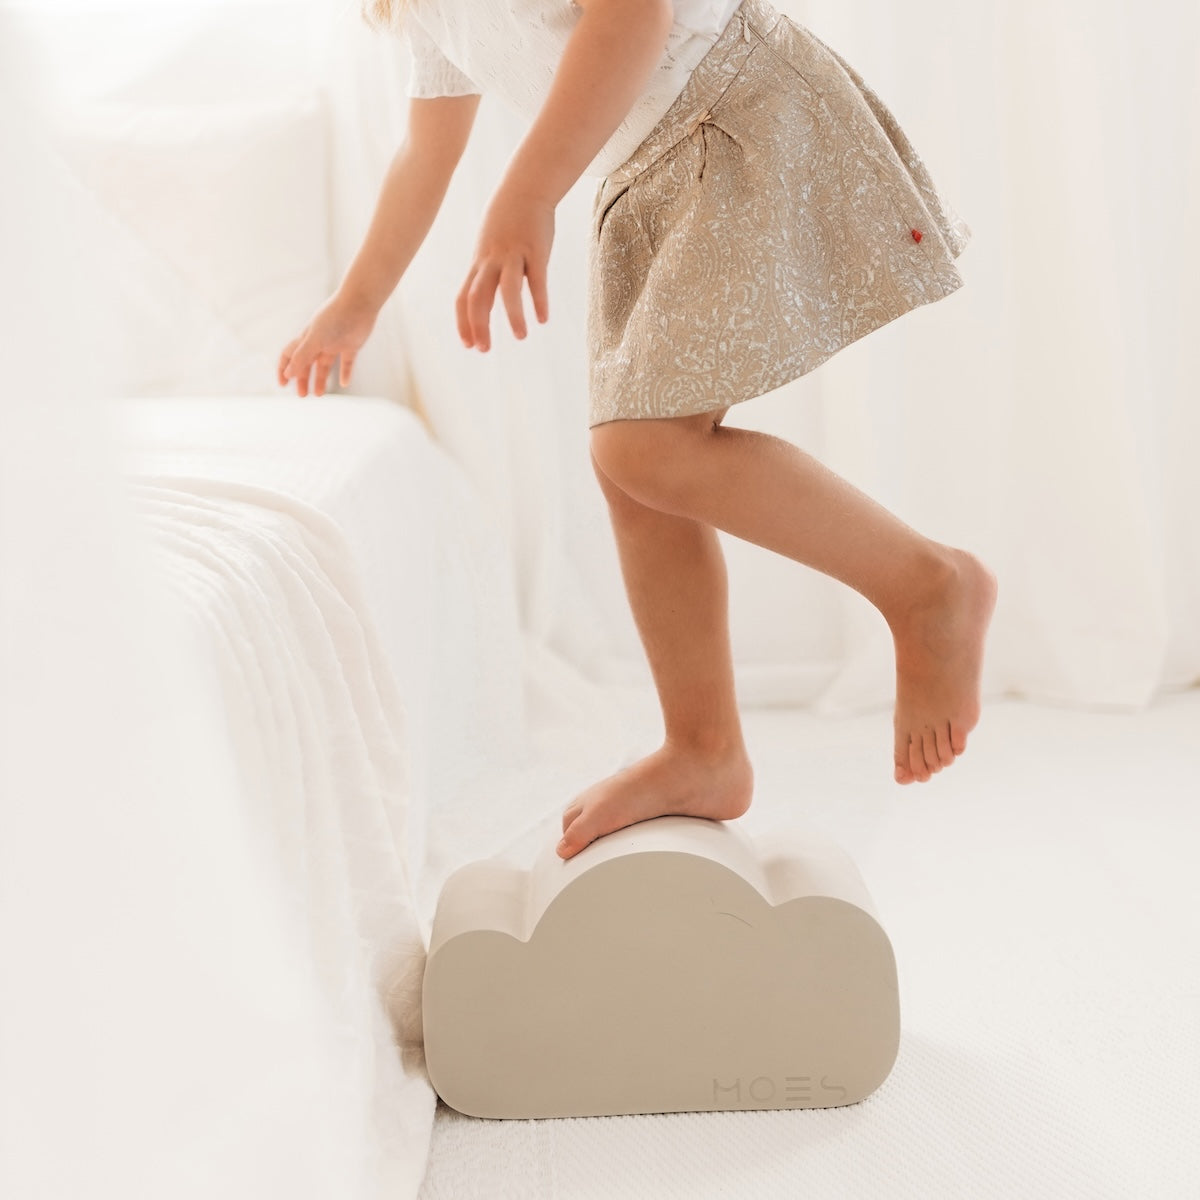 Deze Moes Play Cloud is ideaal voor als je je kindje kennis wilt laten maken met open ended speelgoed; speelgoed waarbij alles mogelijk is! Je kunt op de wolk gaan liggen, er overheen lopen, het gebruiken als cool parcouronderdeel of het wolkje gebruiken als decor van je verhaal! VanZus